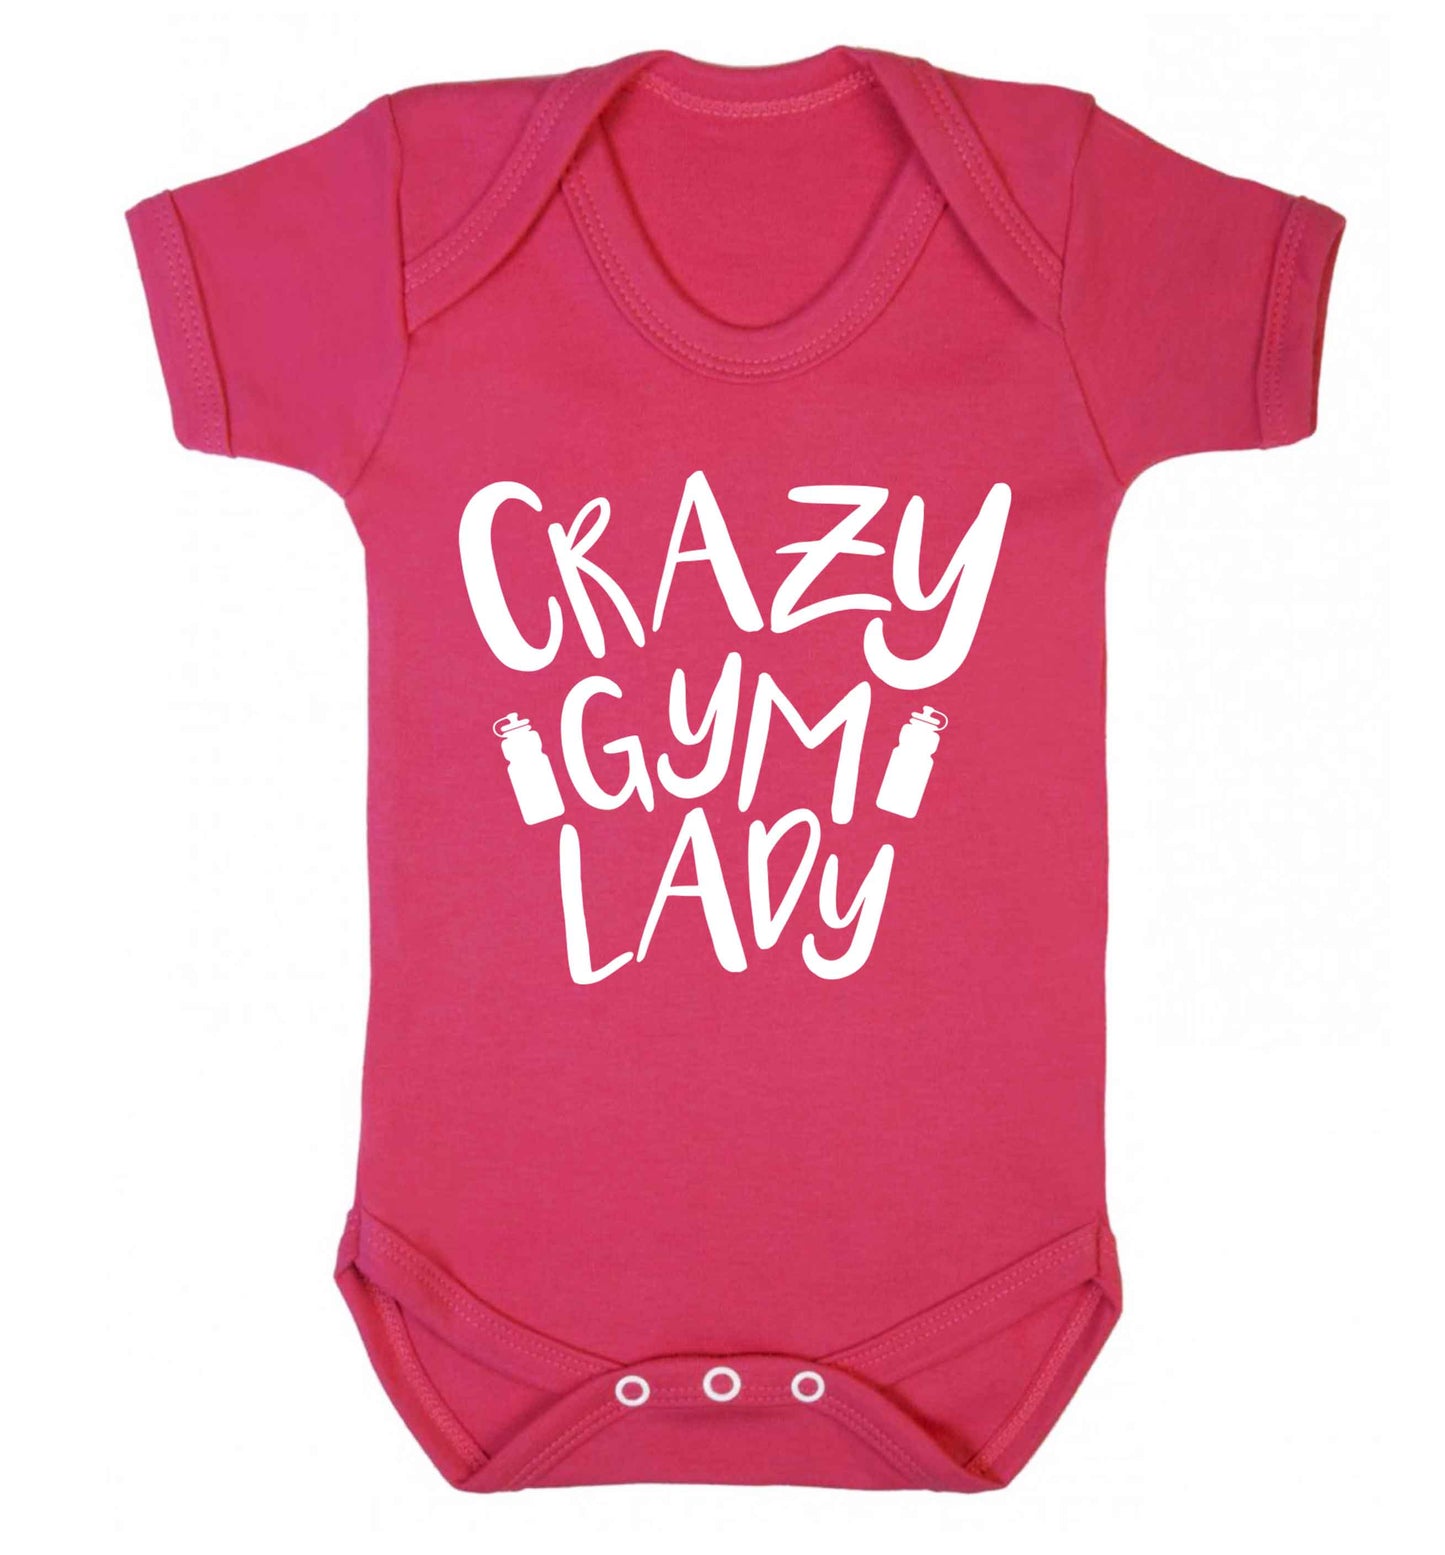 Crazy gym lady Baby Vest dark pink 18-24 months